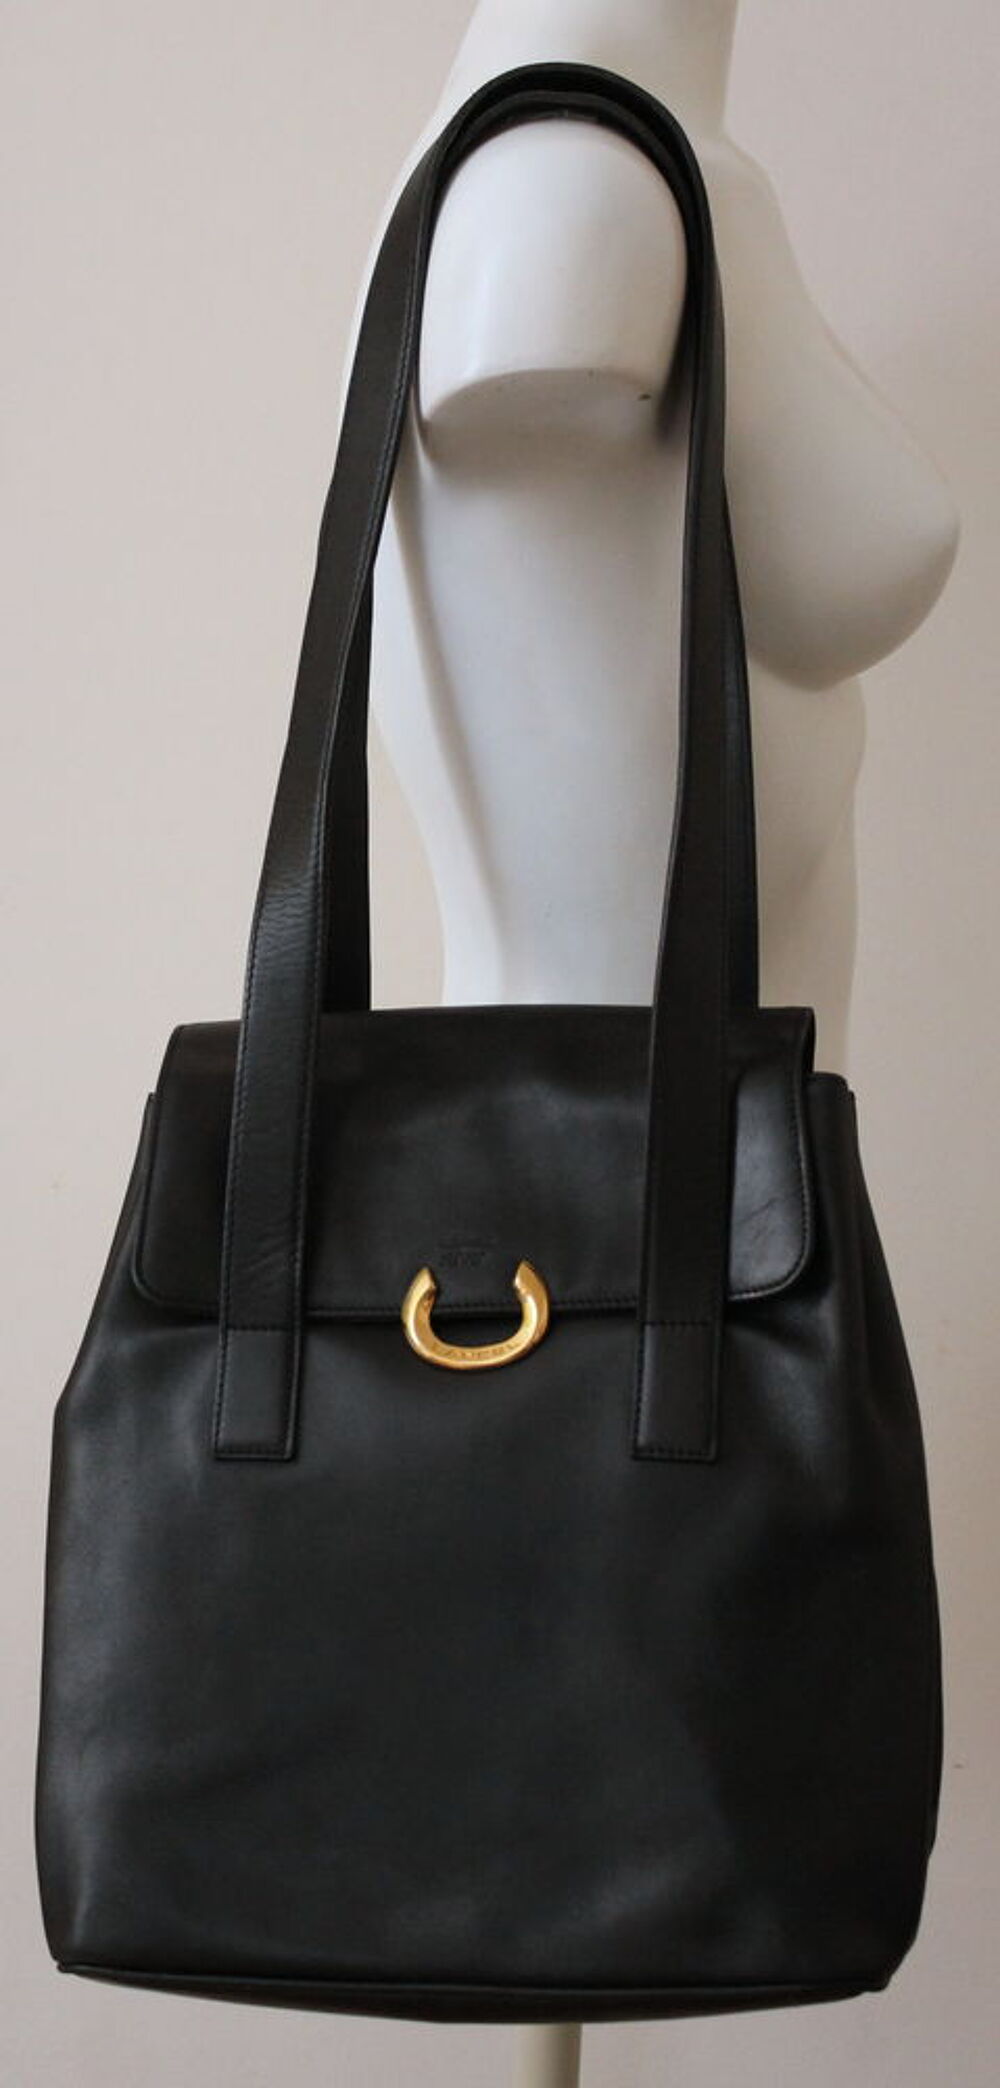 Grand sac cuir noir LANCEL Maroquinerie